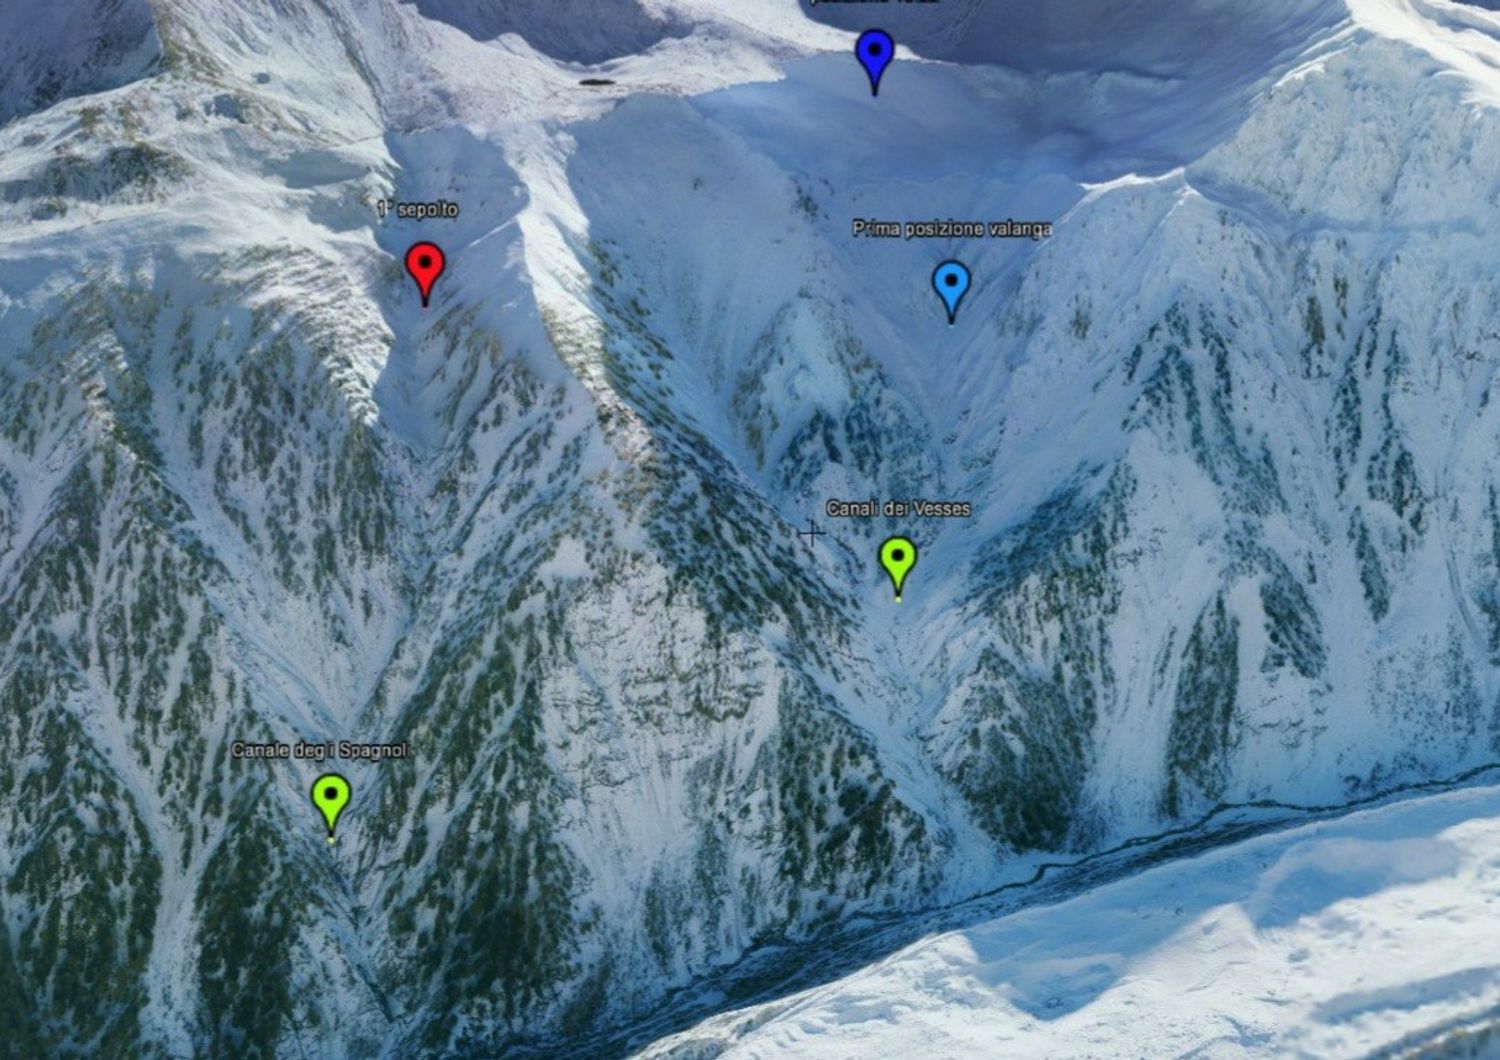 valanga valle aosta due sciatori dispersi